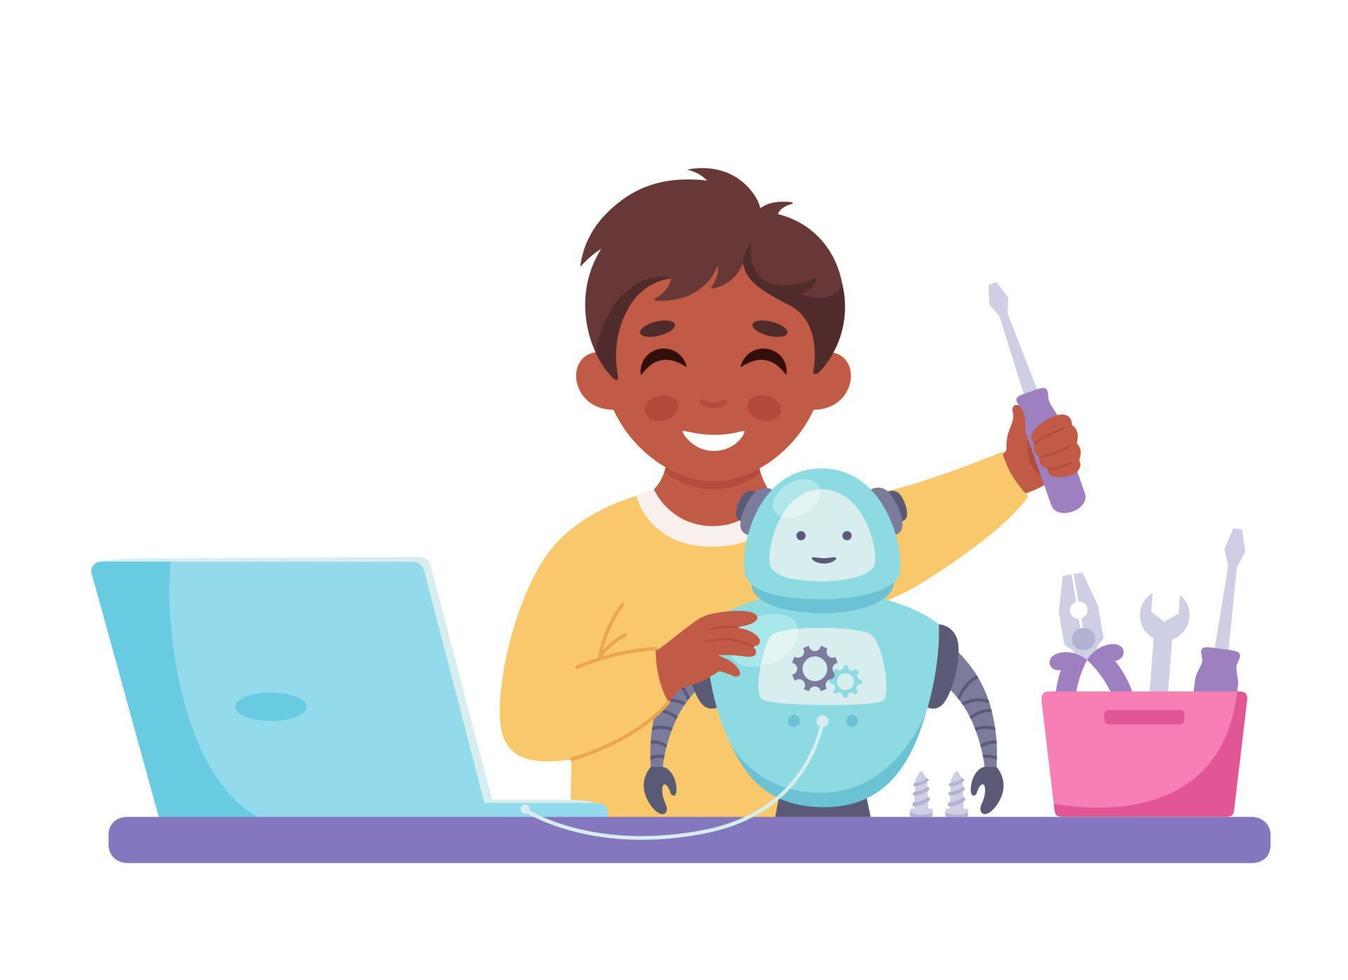 kleine jongen die een robot maakt. robotica, programmeren en techniek voor kinderen vector